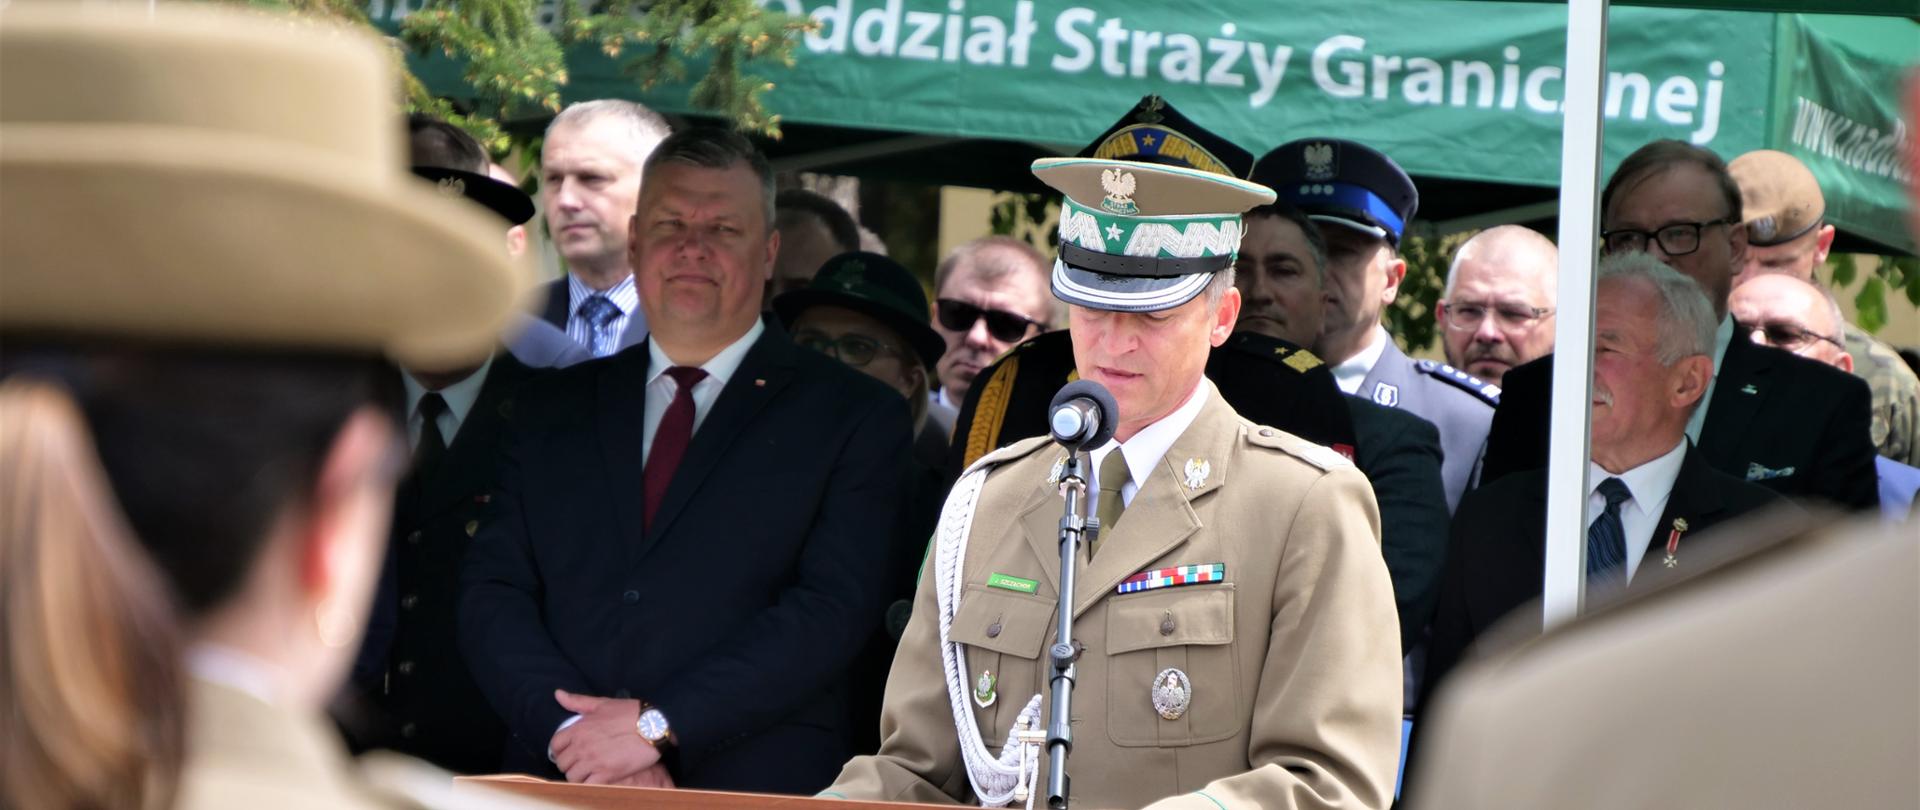 Zdjęcie przedstawia jedną osobę w mundurze stojącą przy mównicy i przemawiającą do mikrofonu